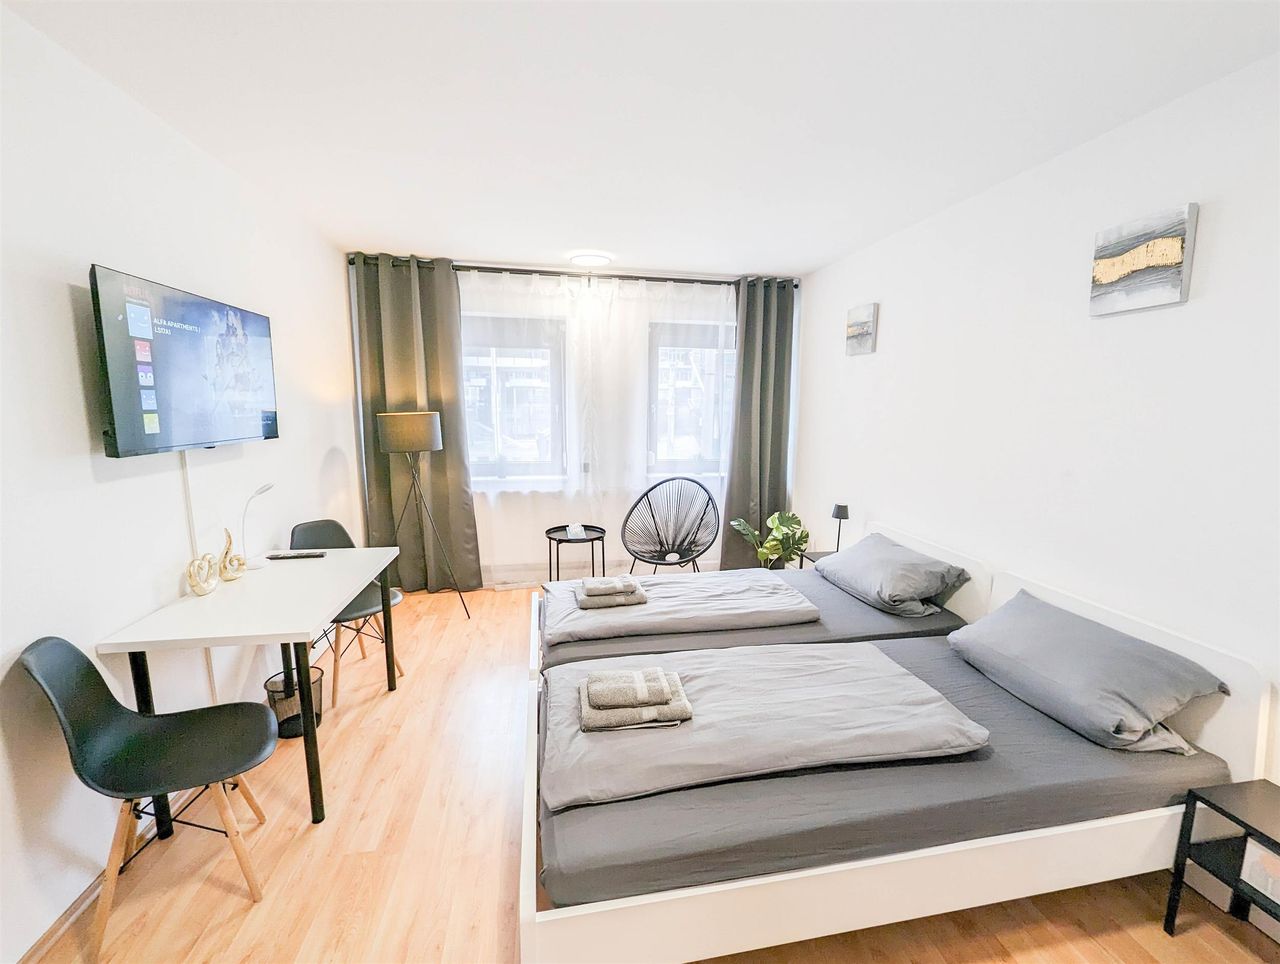 2 room apartment right in the Stuttgart city 6ppl